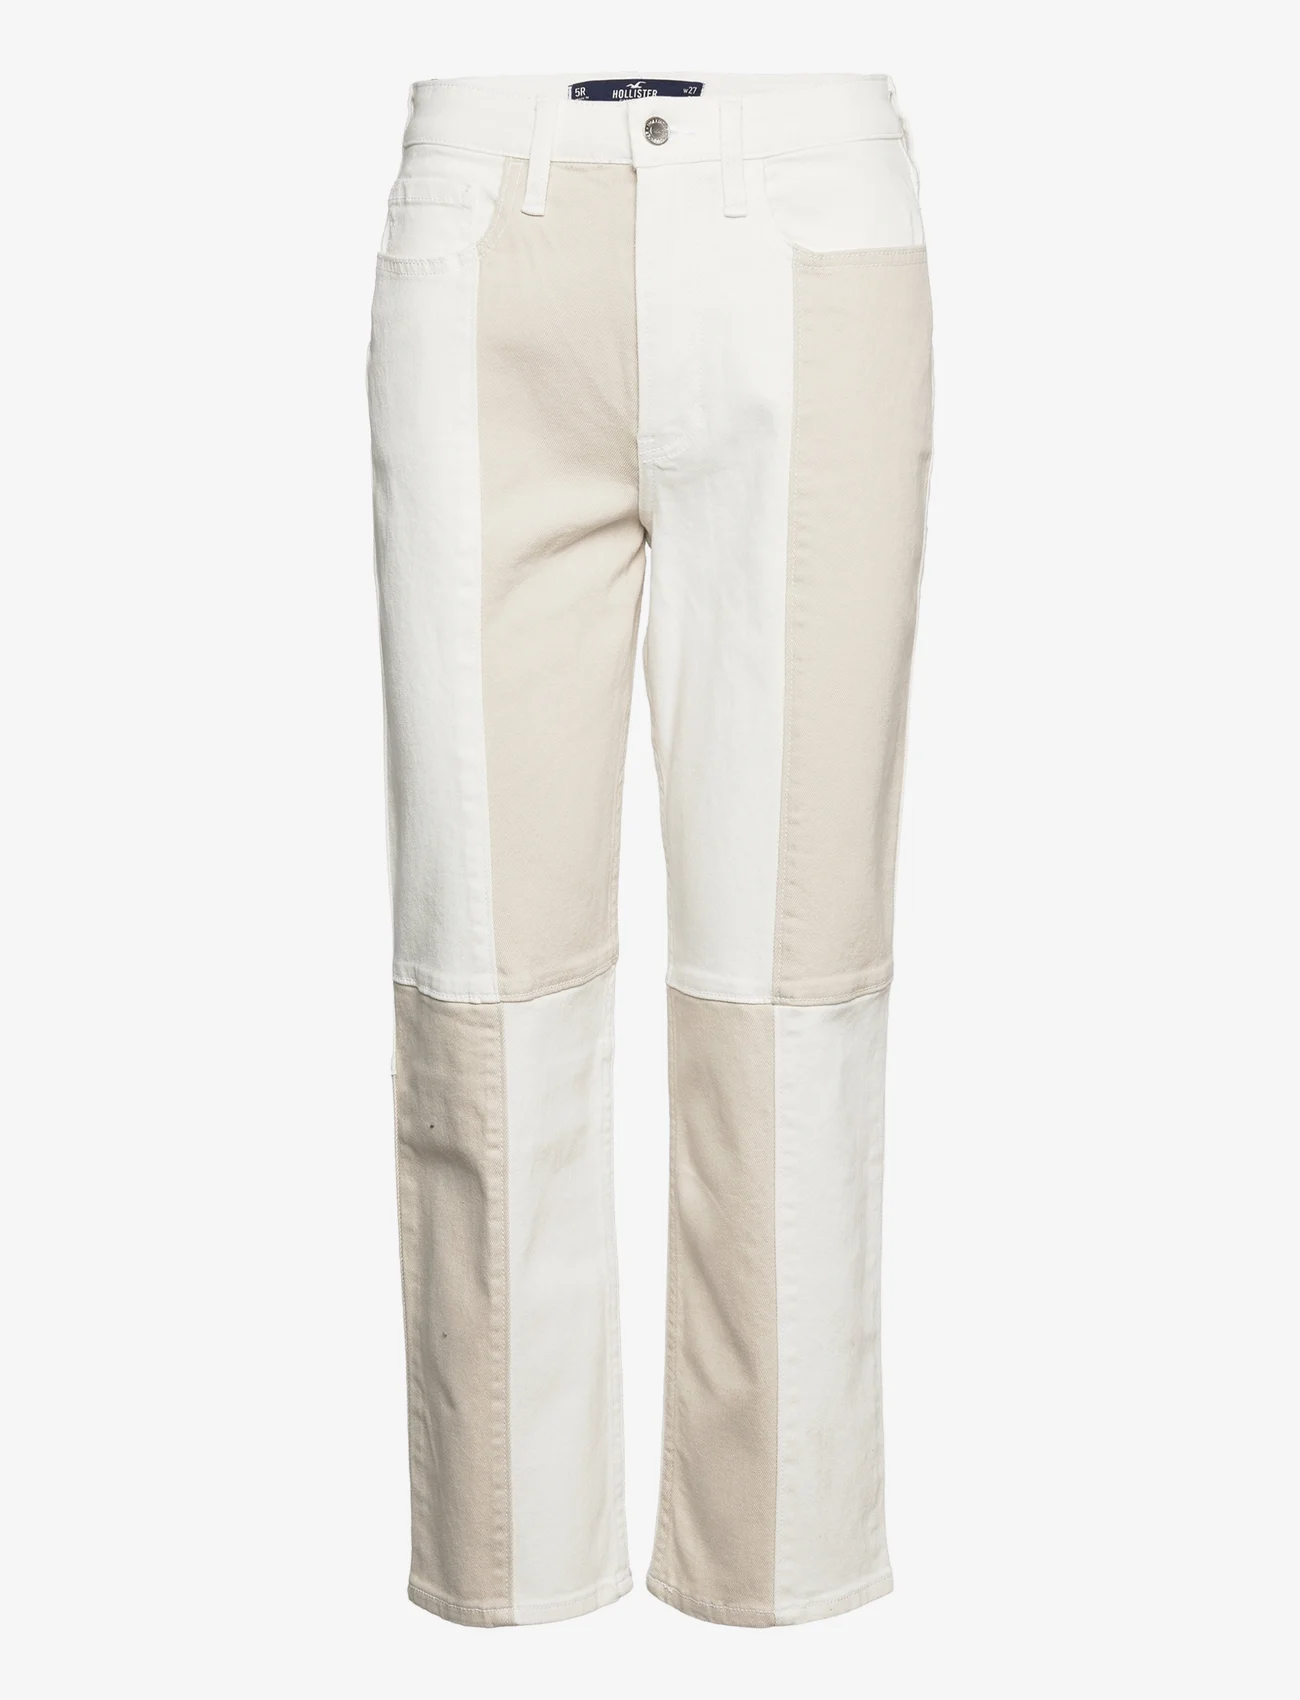 Hollister - HCo. GIRLS JEANS - tiesaus kirpimo džinsai - ultra high rise white vintage straight jean - 0